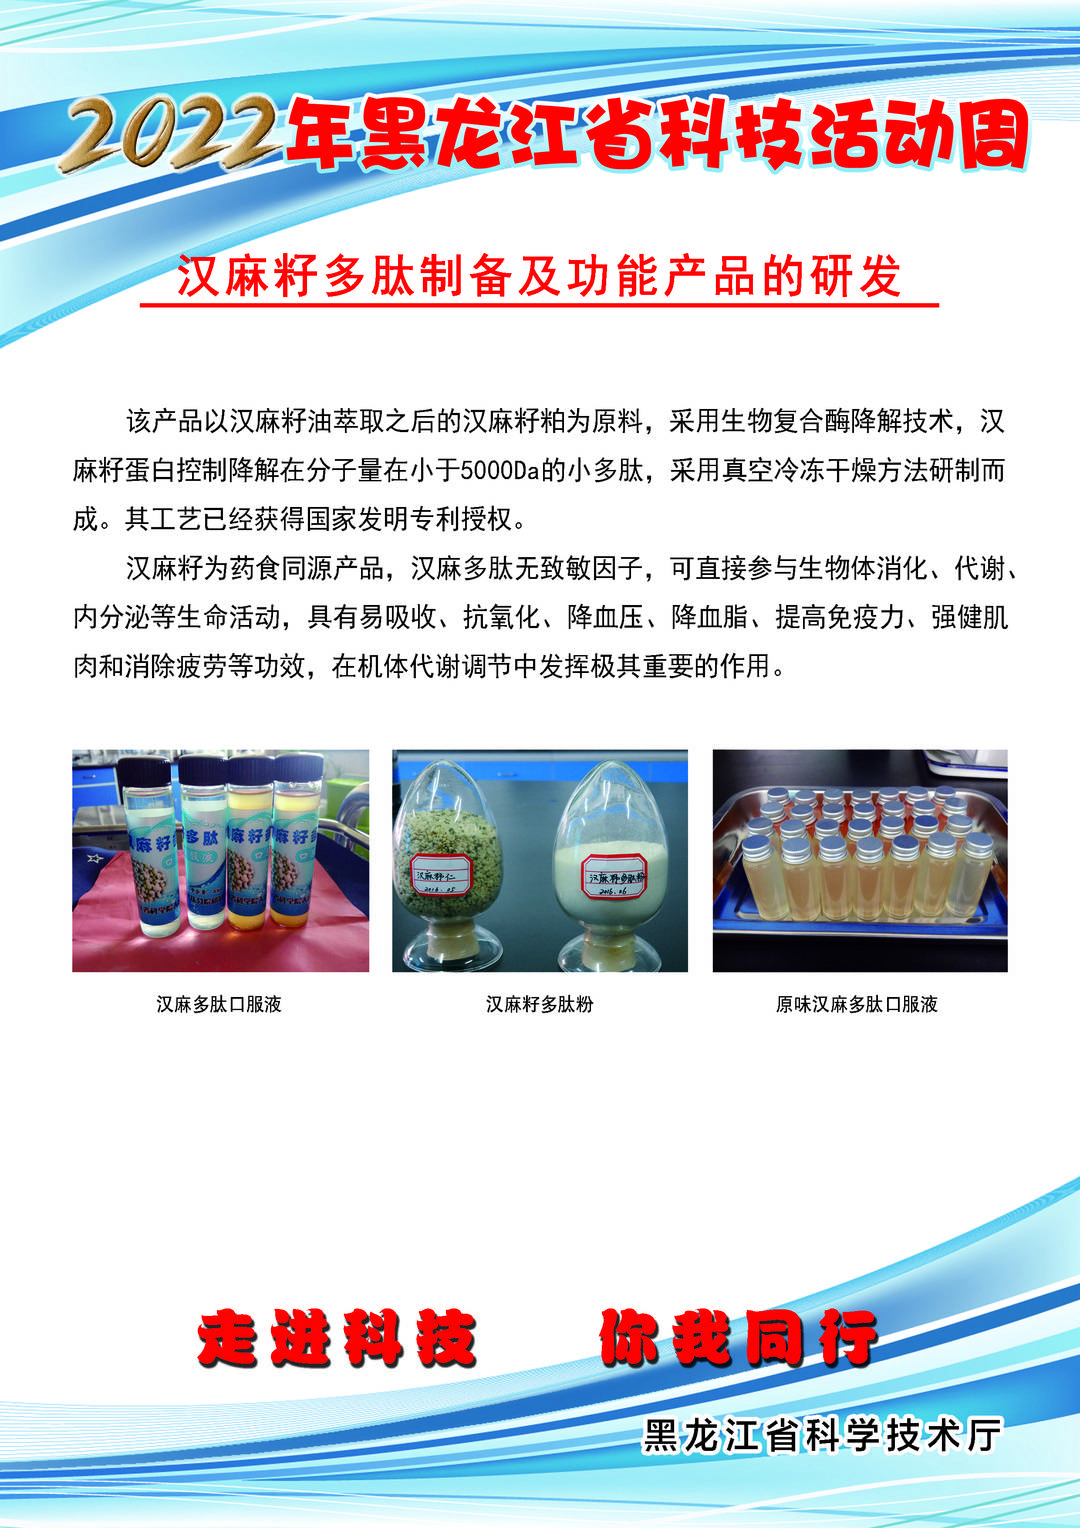 黑龙江省科技创新成果展丨汉麻籽多肽制备及功能产品的研发